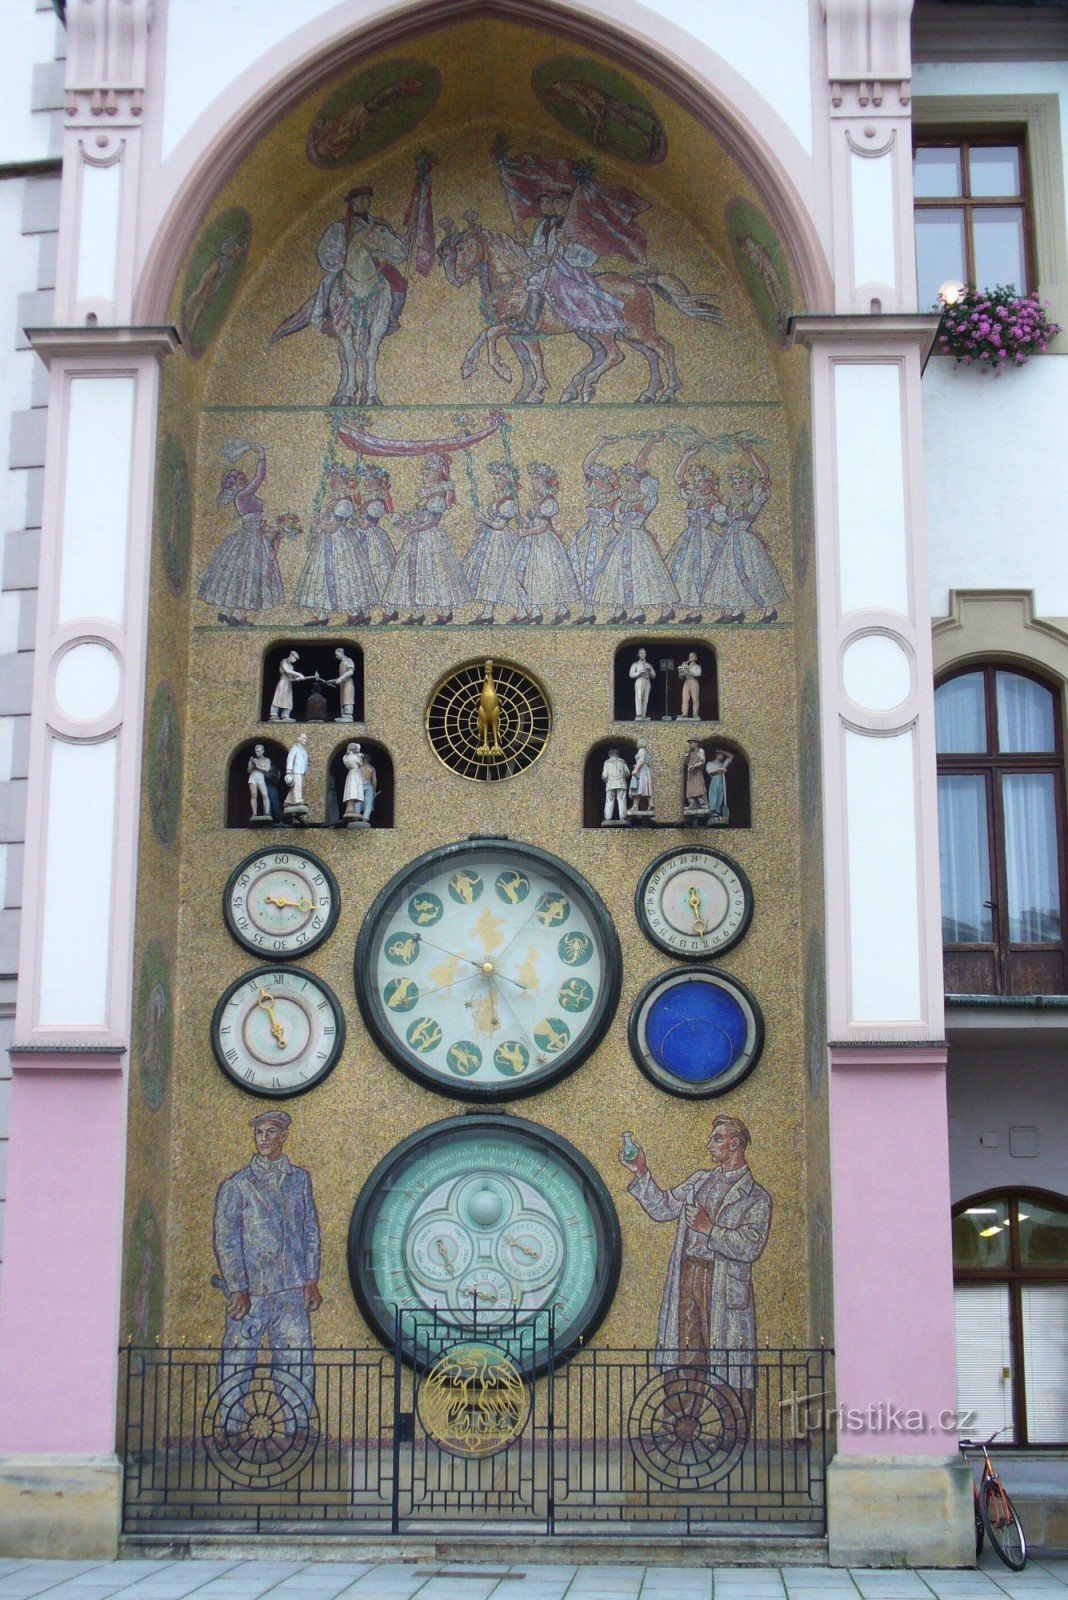 Астрономічний годинник